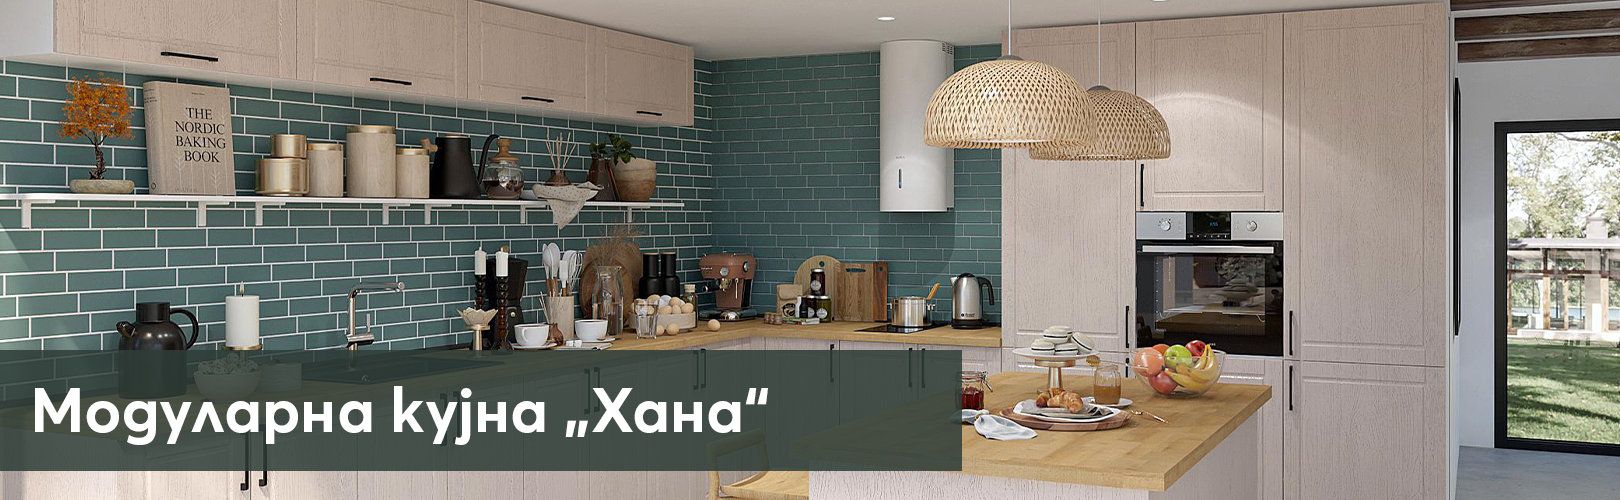 Изображение на модулна кухня, с бели скафове, кафяв кухненски плот, вградена готварска печка.......